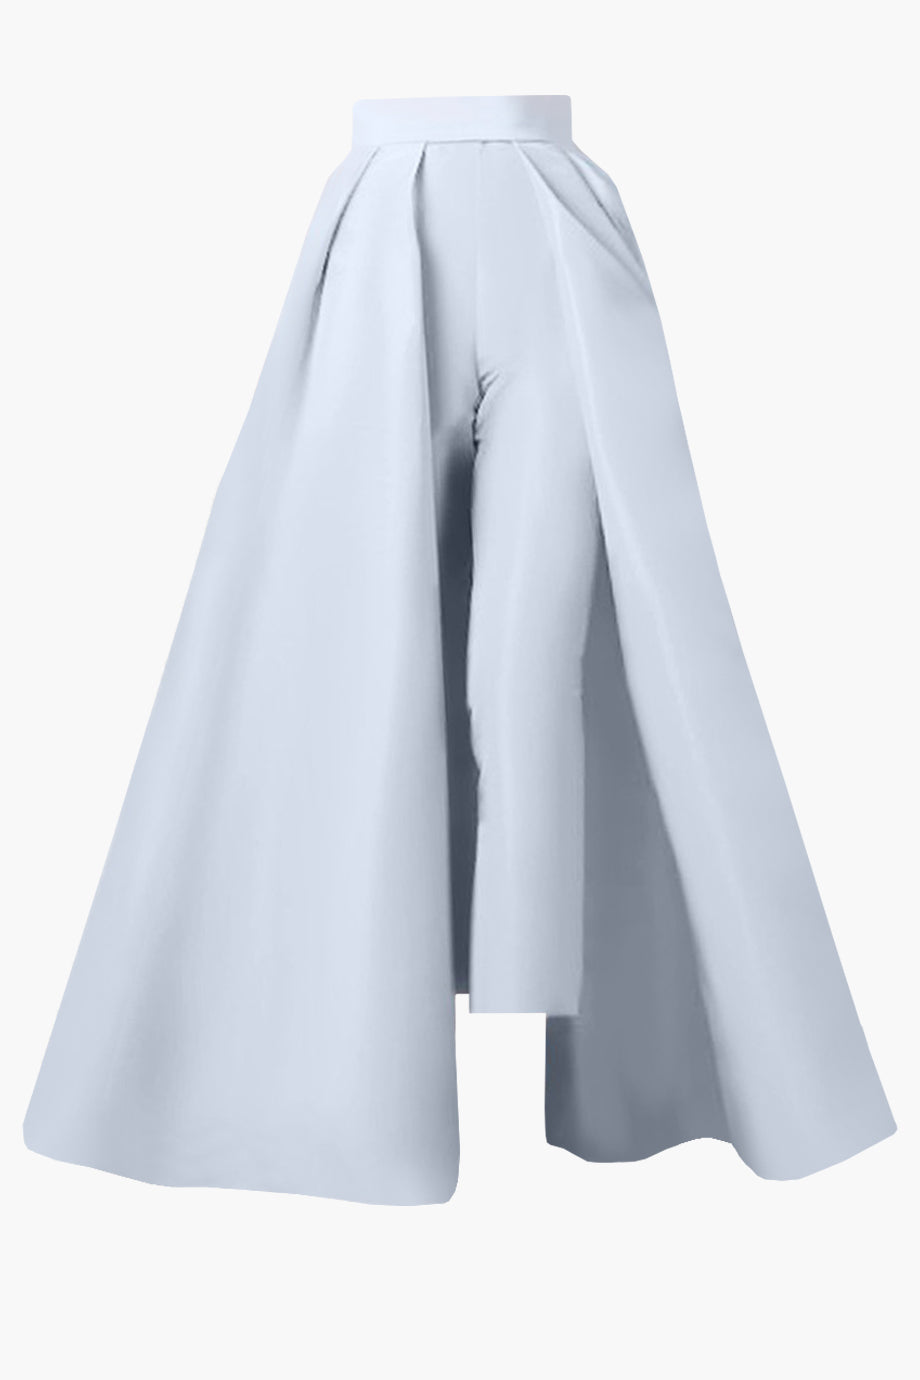 Silk Faille Cigarette Pants with Convertible Skirt – ALEXIA MARÍA